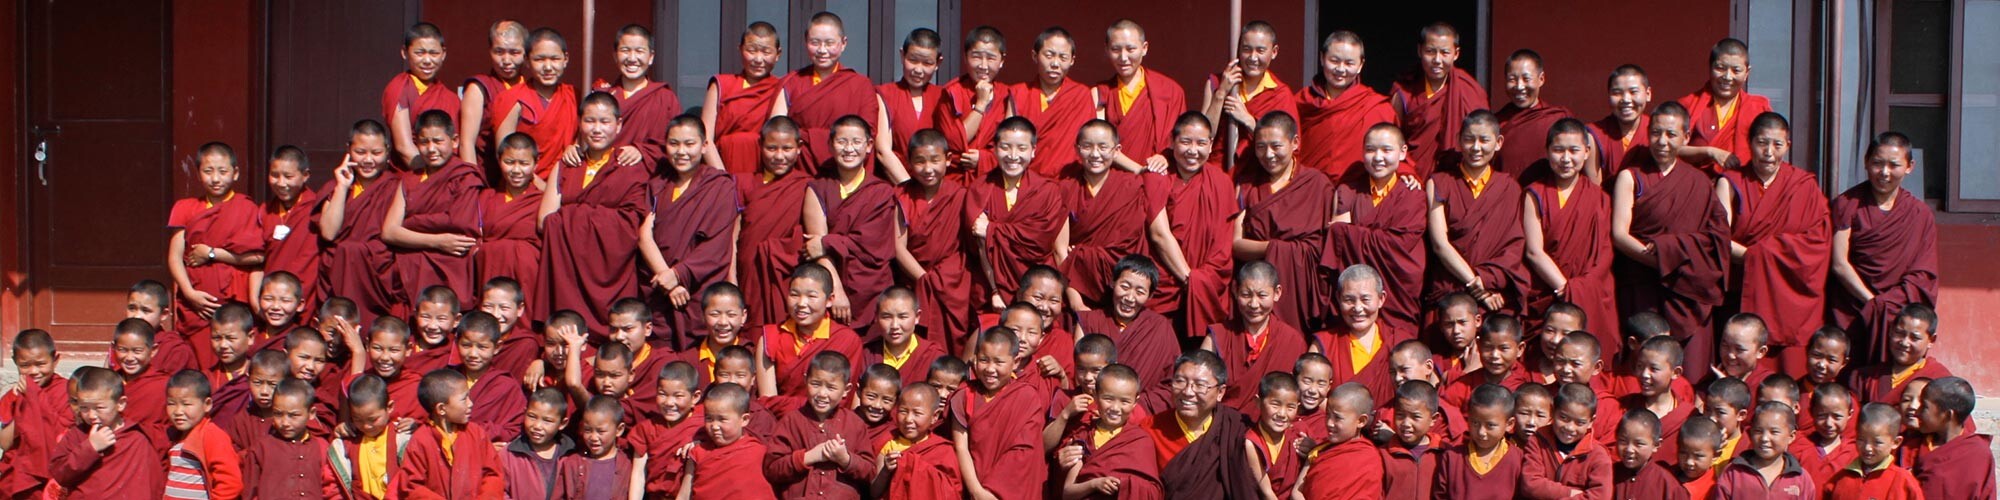 Gruppenfoto der Nonnen von Tsoknyi Gechak Ling